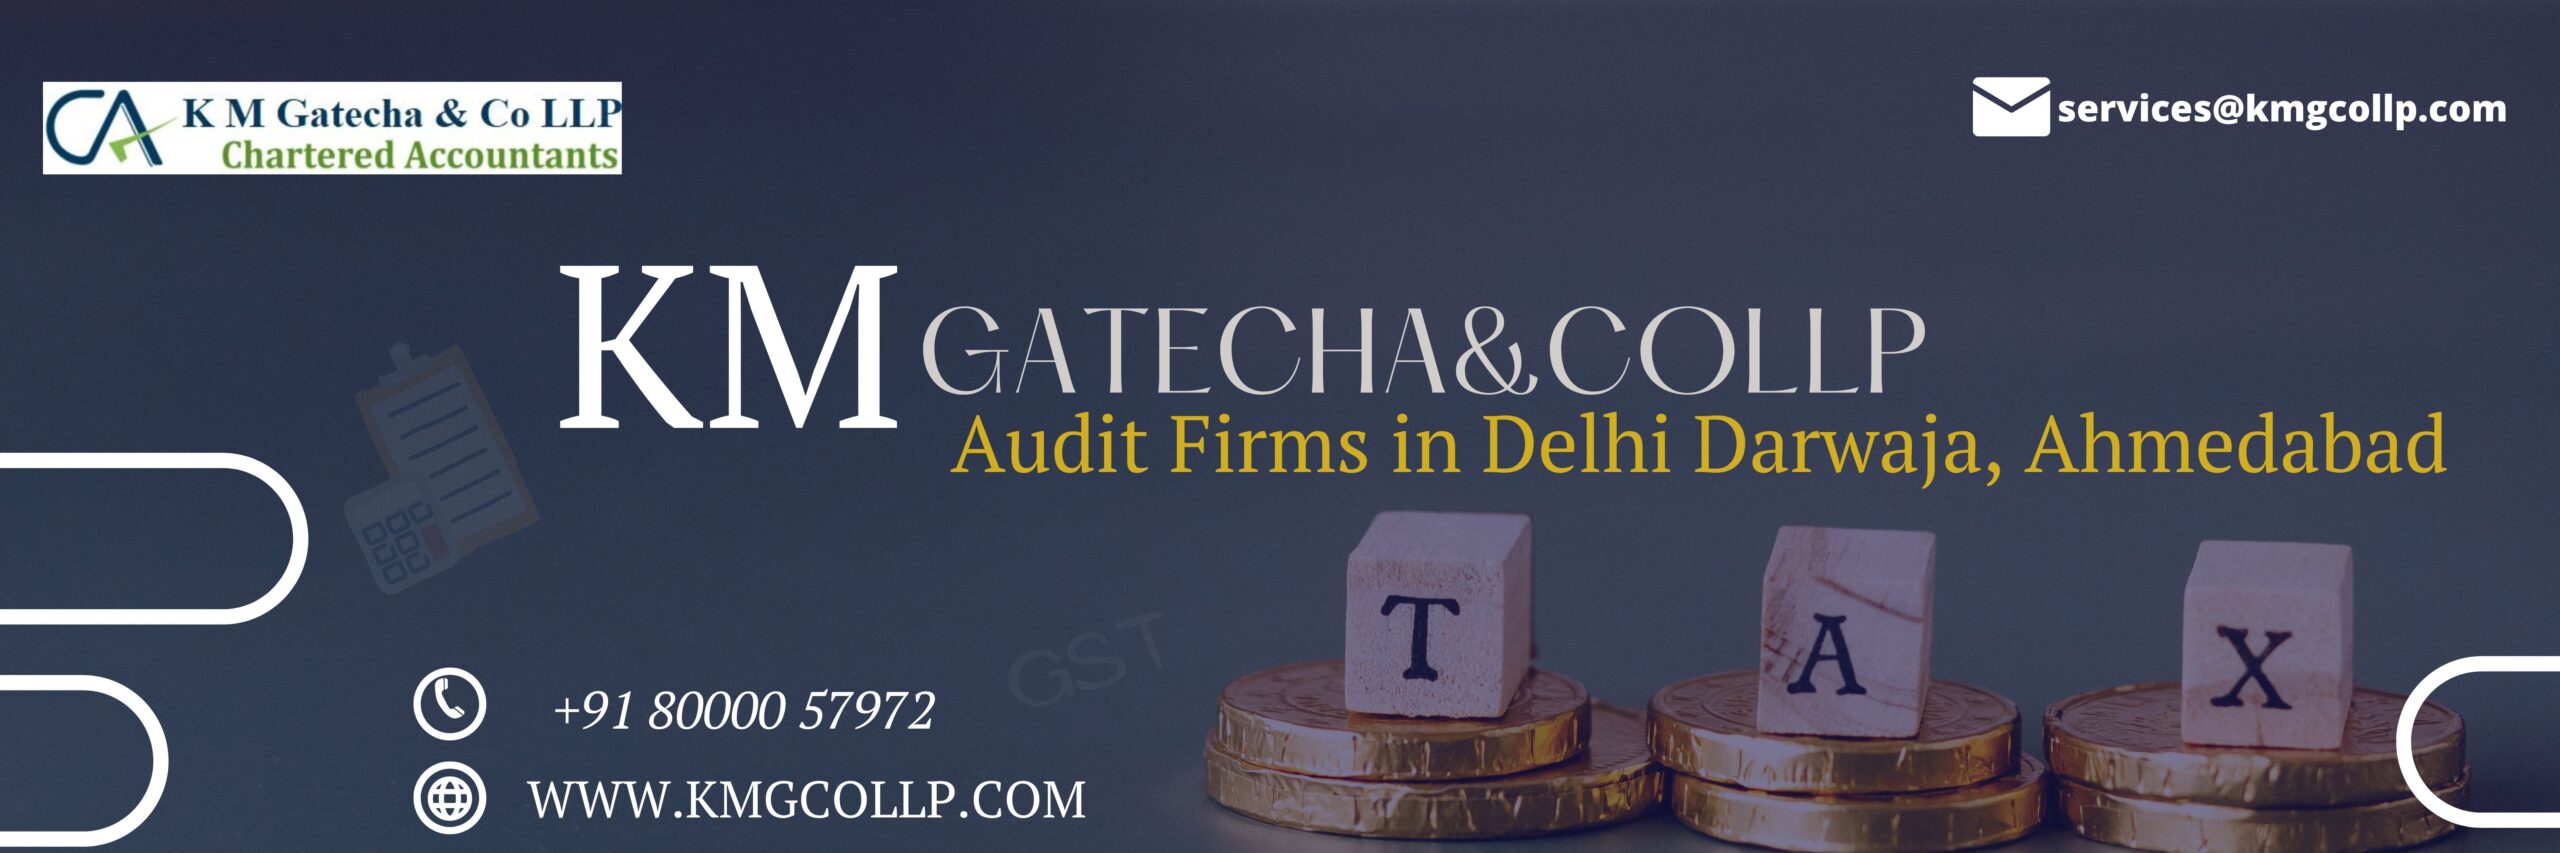 Audit Firms in Delhi Darwaja, Ahmedabad